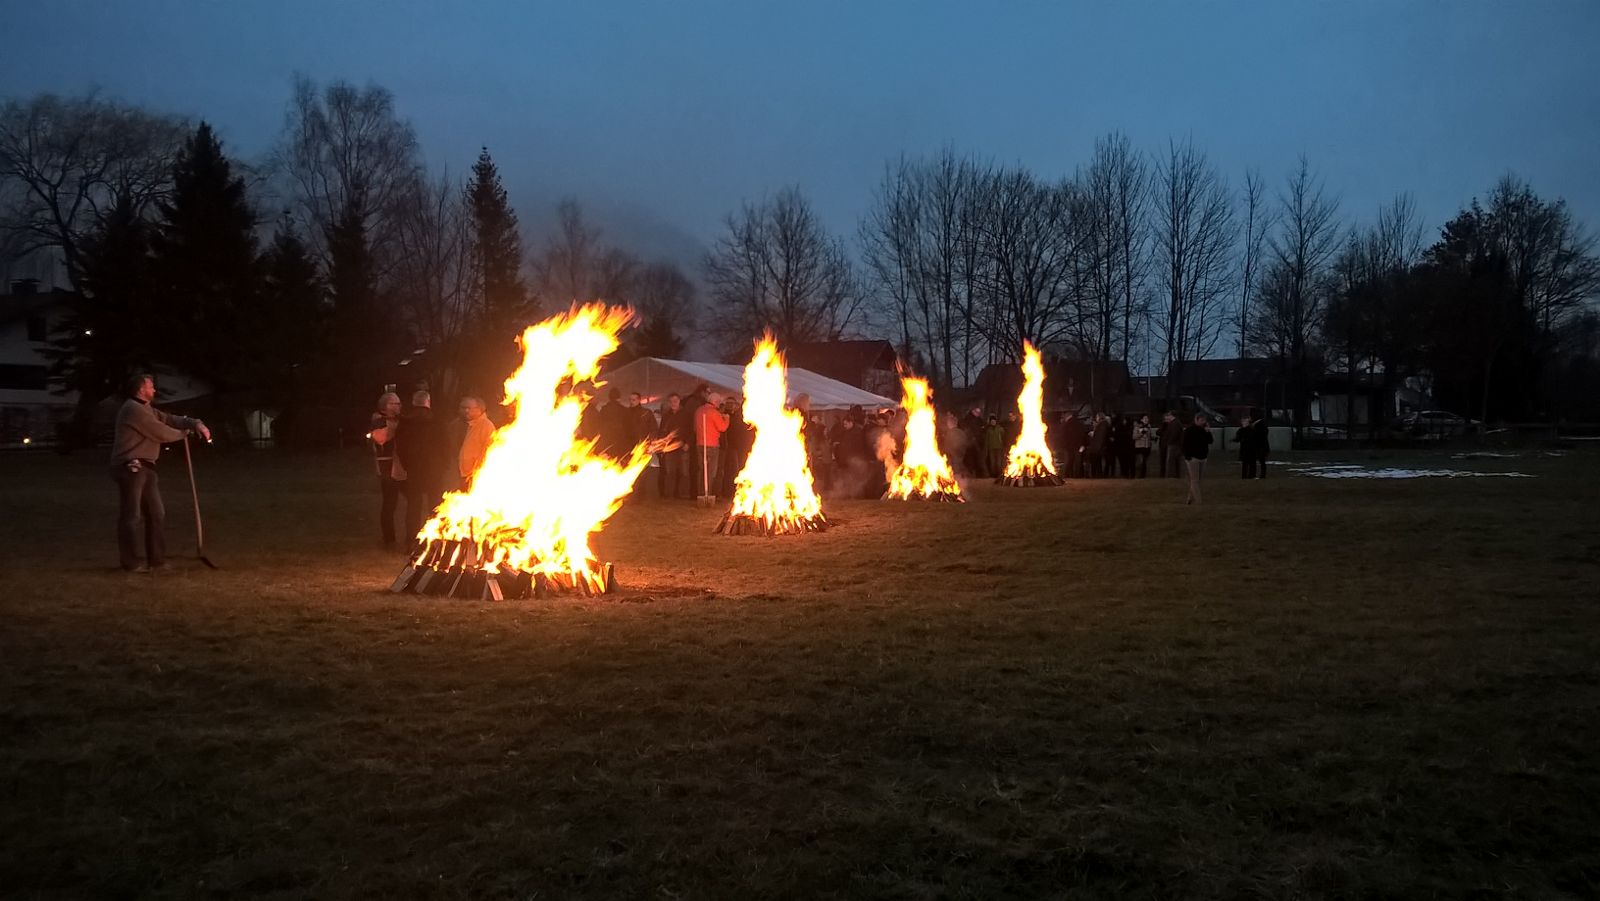 Feuer für Feuerlauf Event mit 150 Teilnehmern